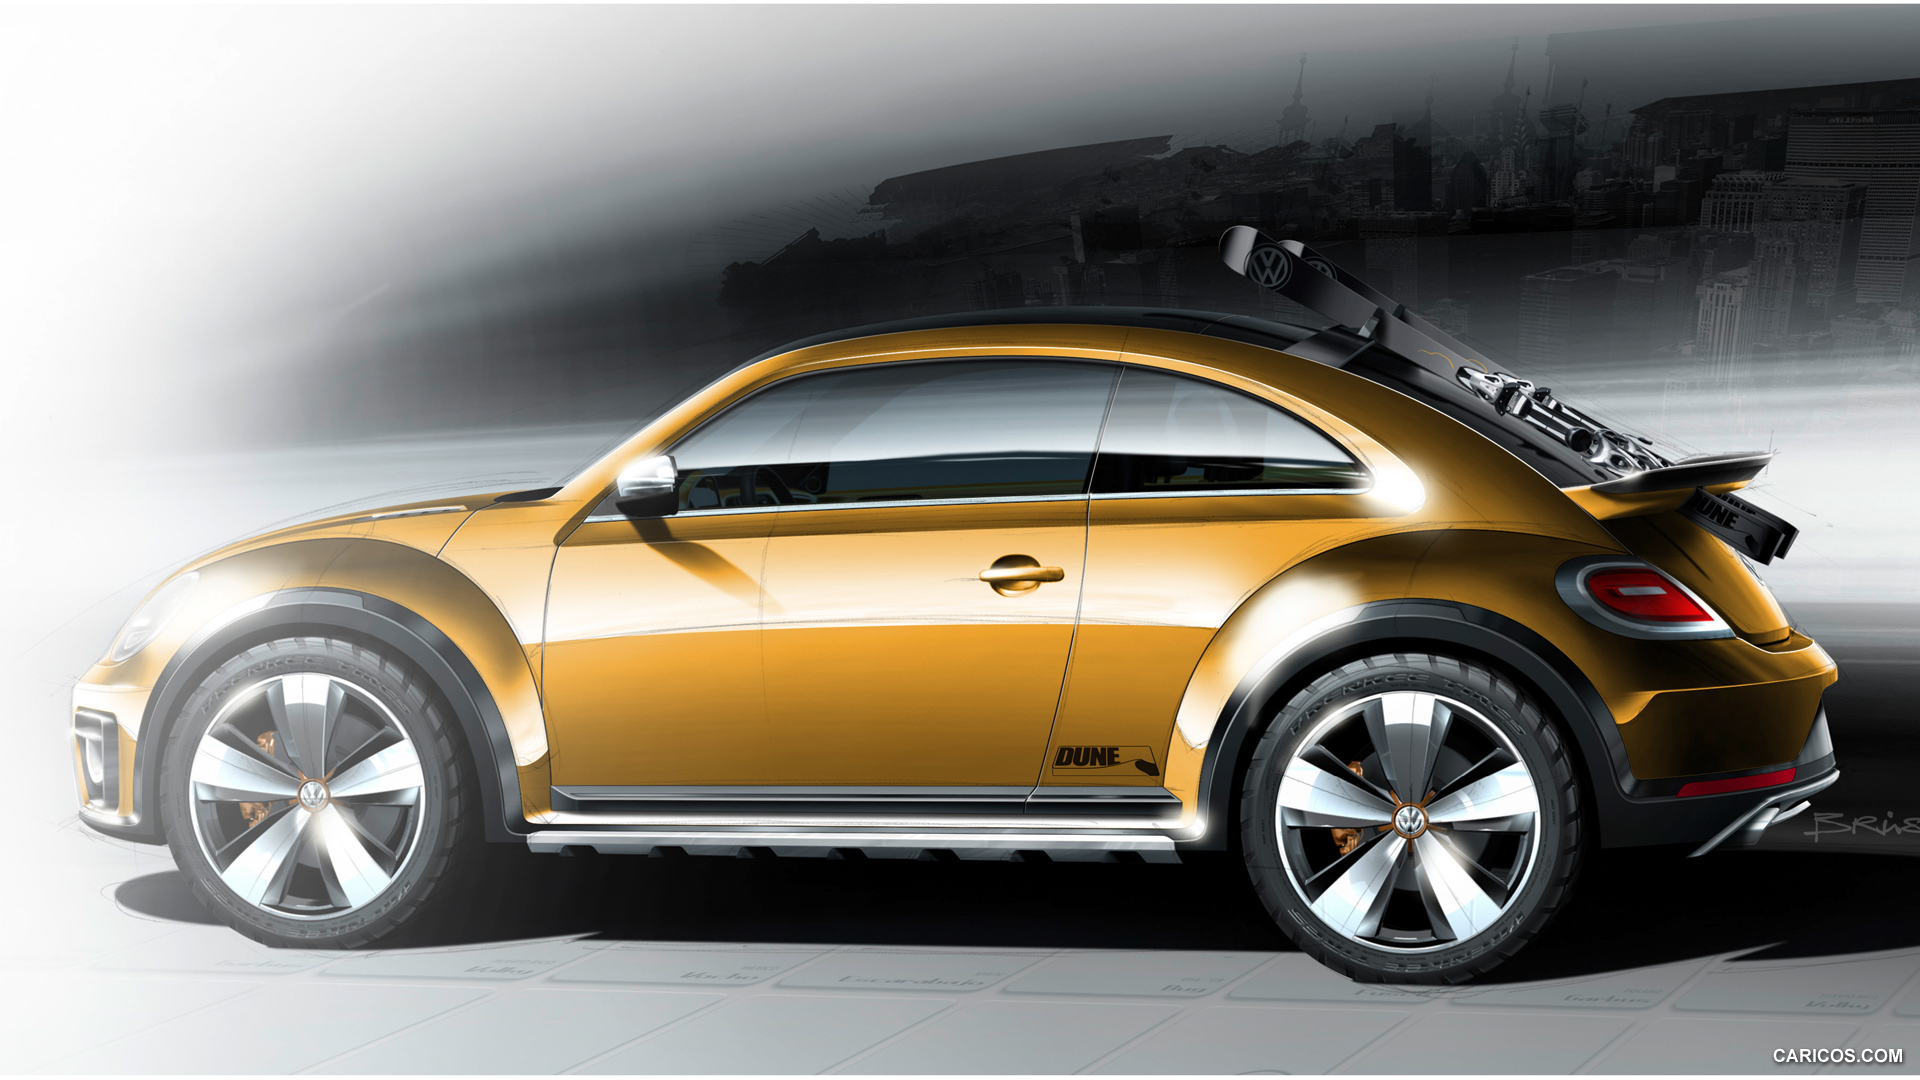 2014 Volkswagen Beetle Dune Concept HD wallpapers, Desktop wallpaper - most viewed